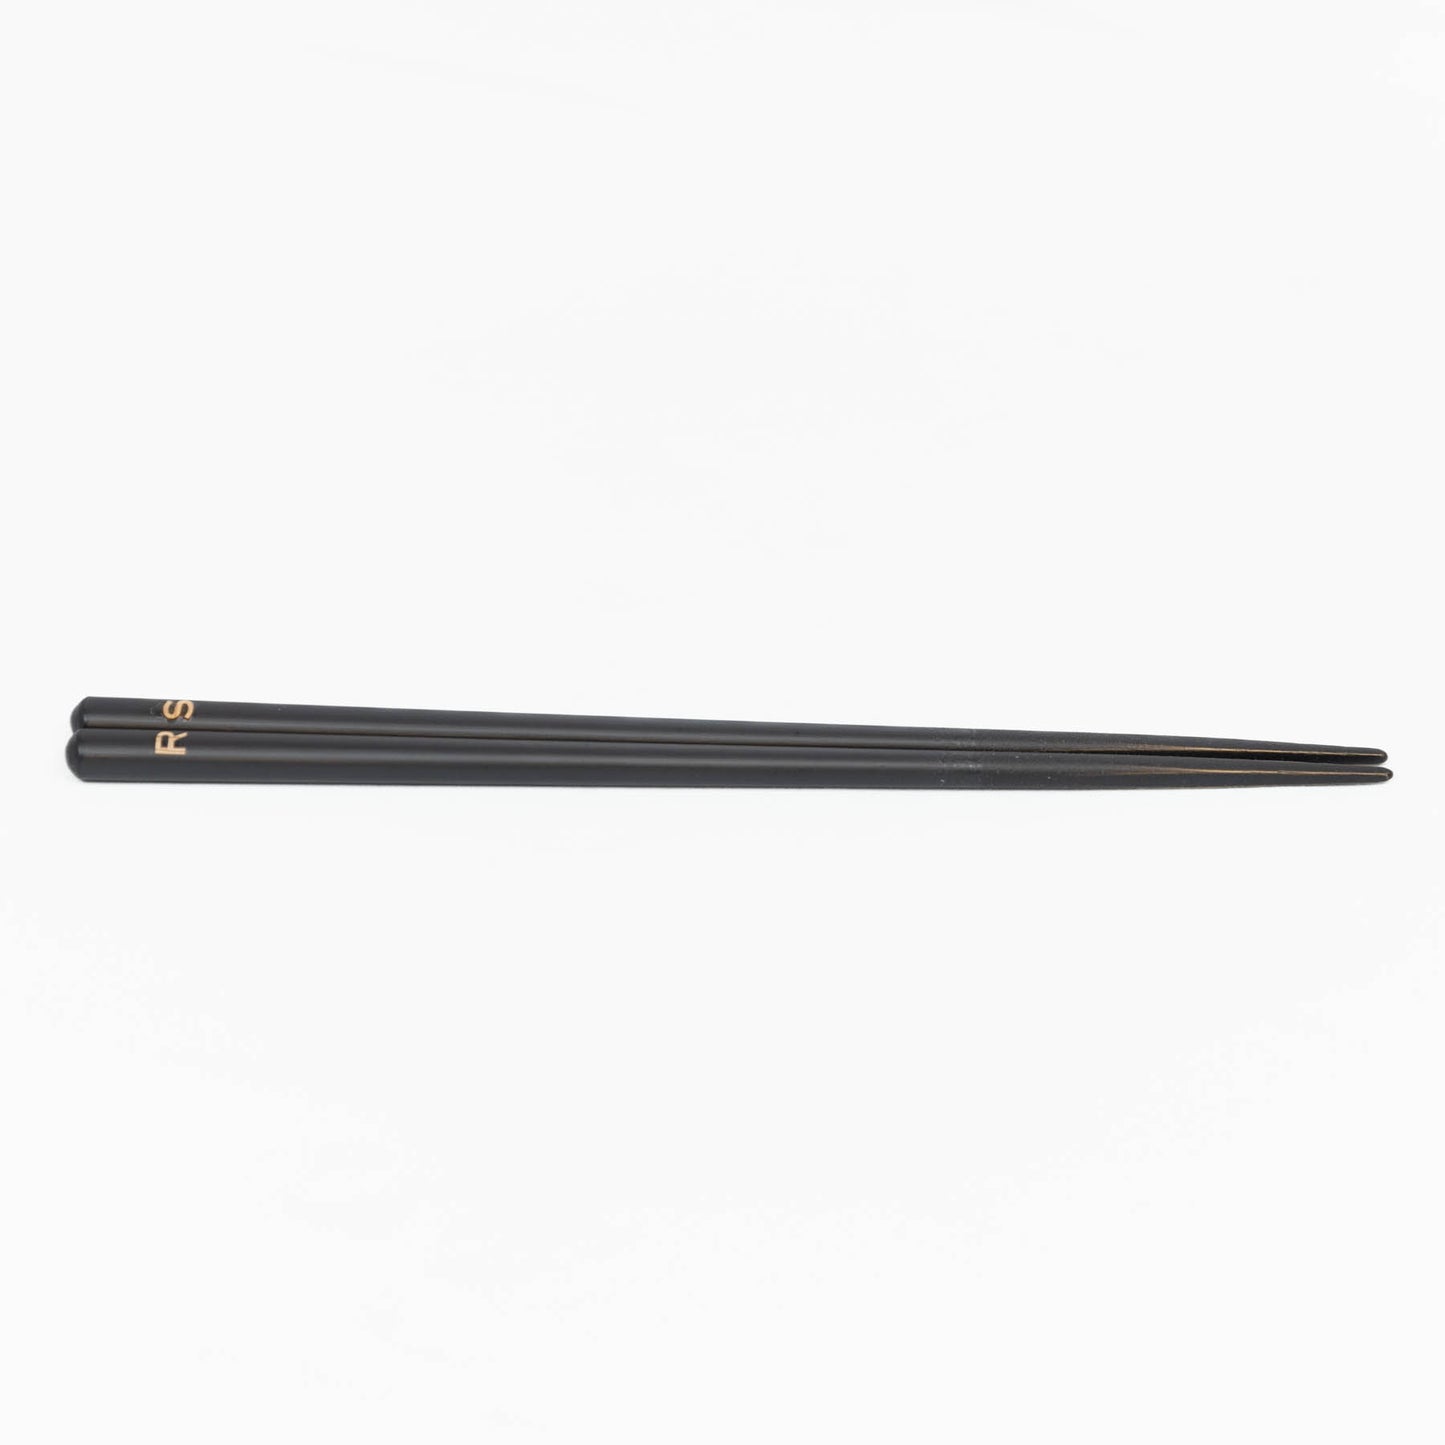 Graport  -Iinitial Chopsticks - Black